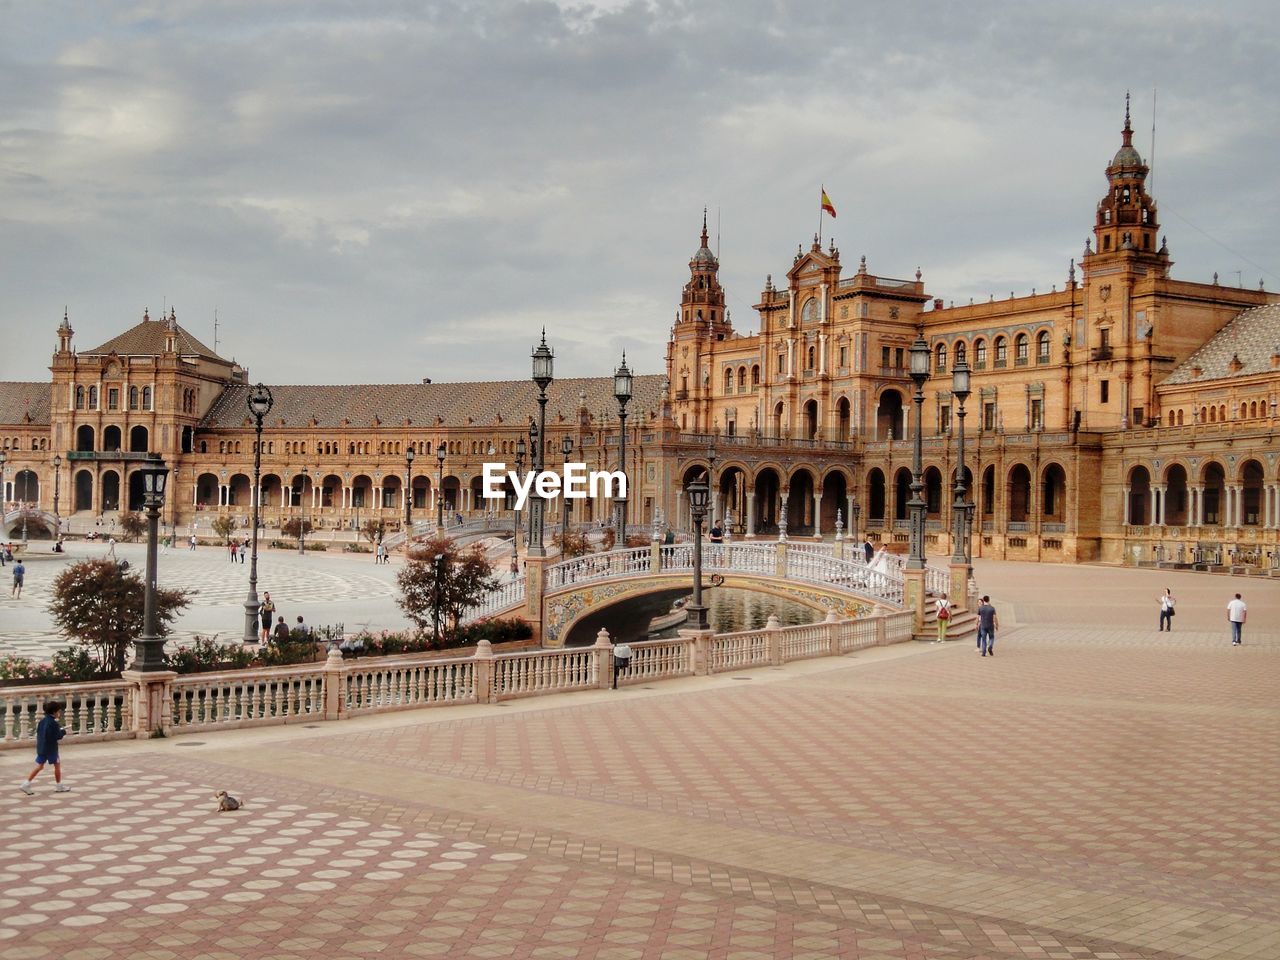 Sevilla masterpiece square